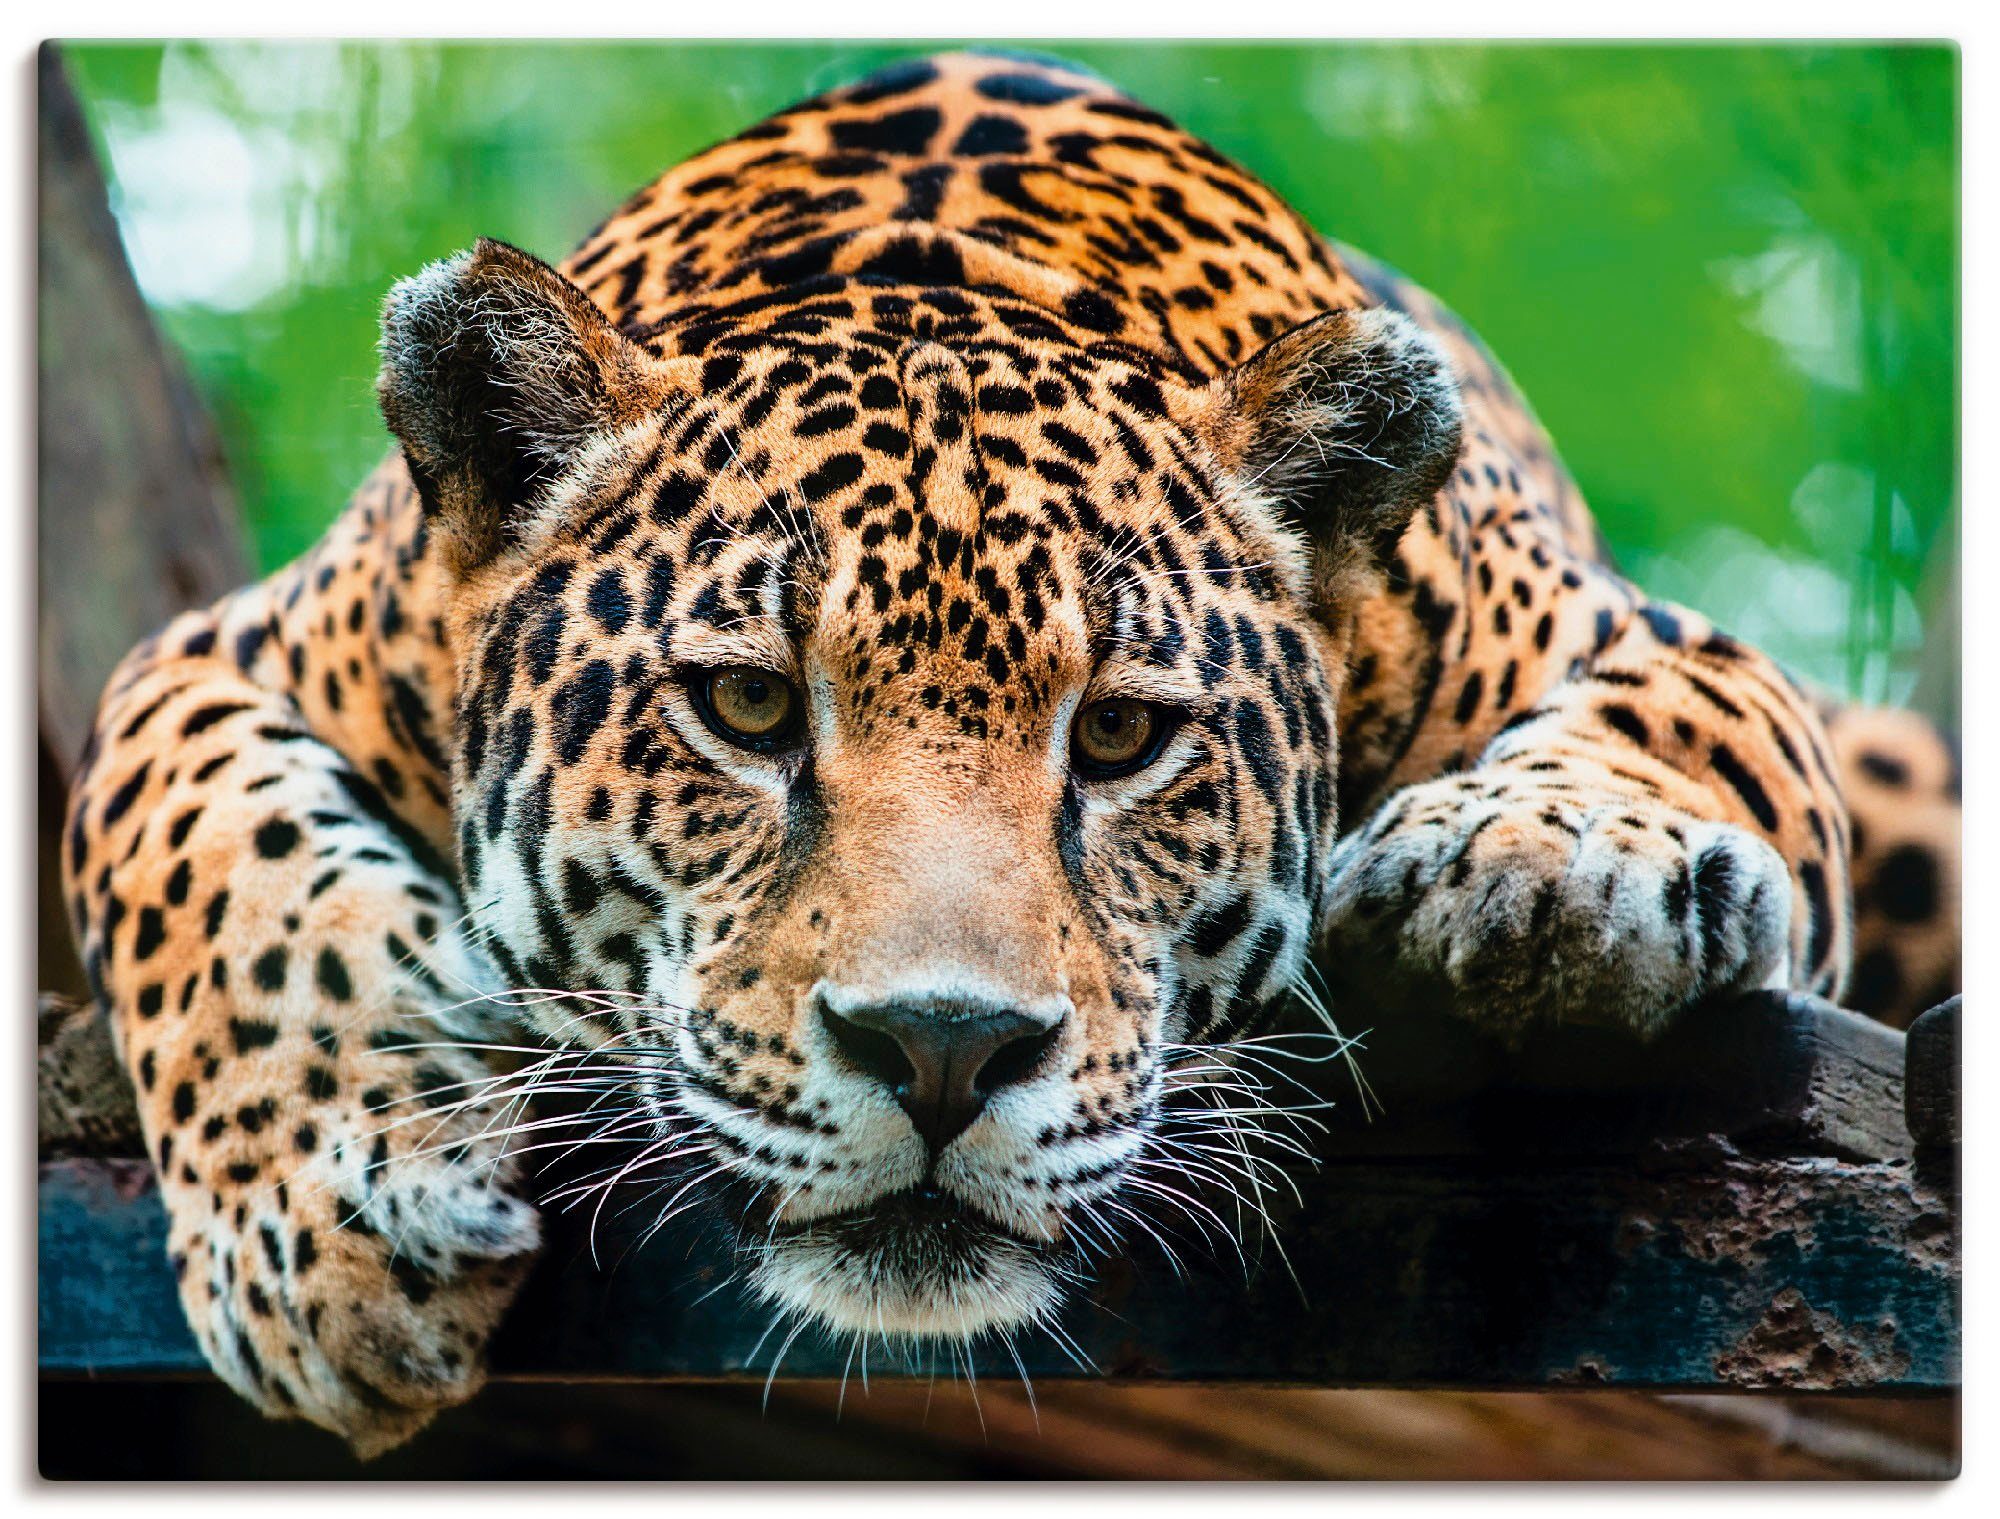 Artland Artprint Zuid-Amerikaanse jaguar in vele afmetingen & productsoorten - artprint van aluminium / artprint voor buiten, artprint op linnen, poster, muursticker / wandfolie oo